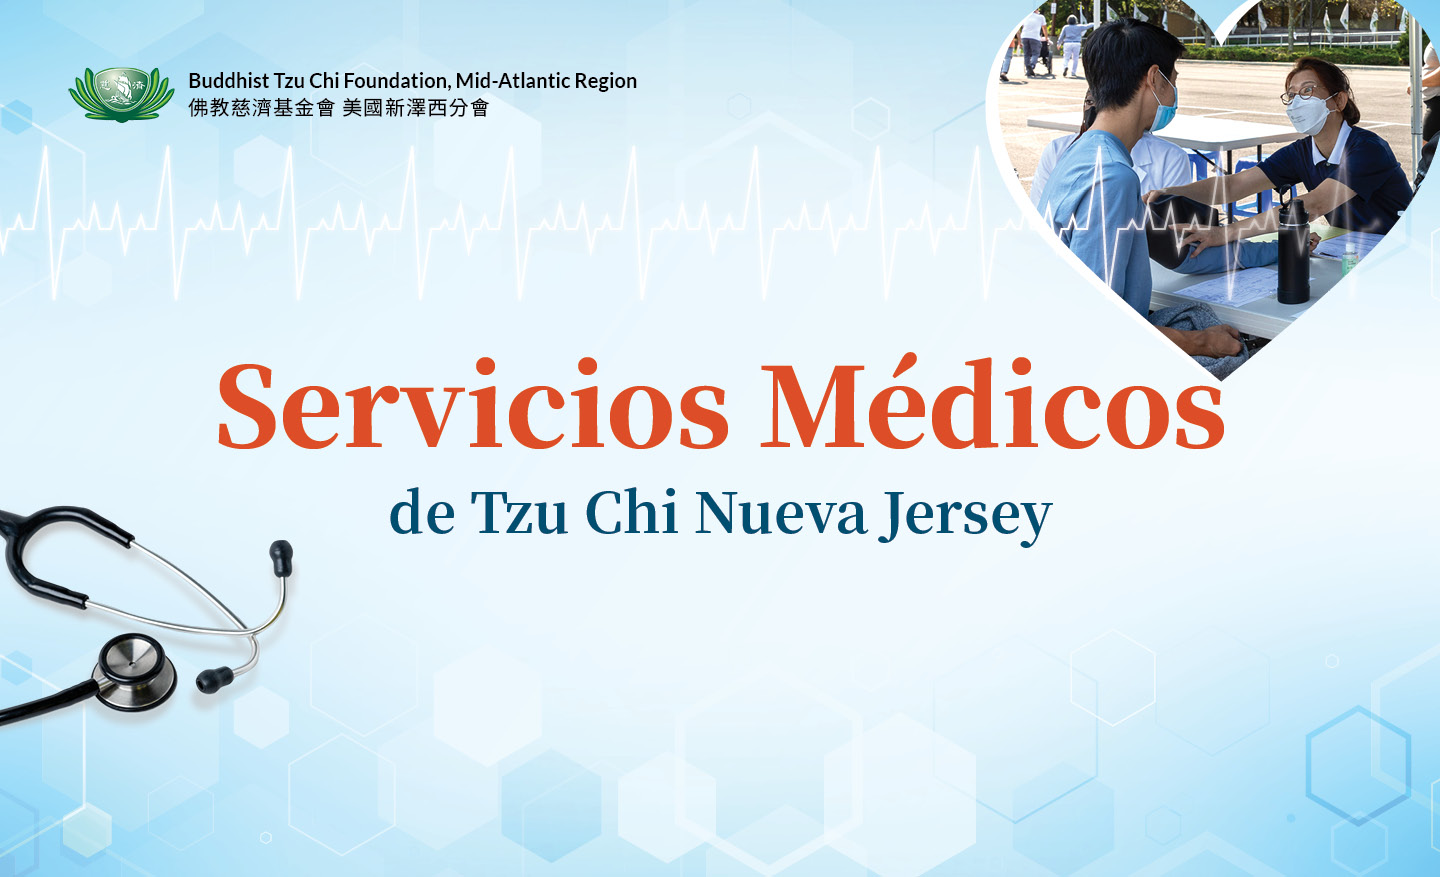 New Jersey servicios médicos